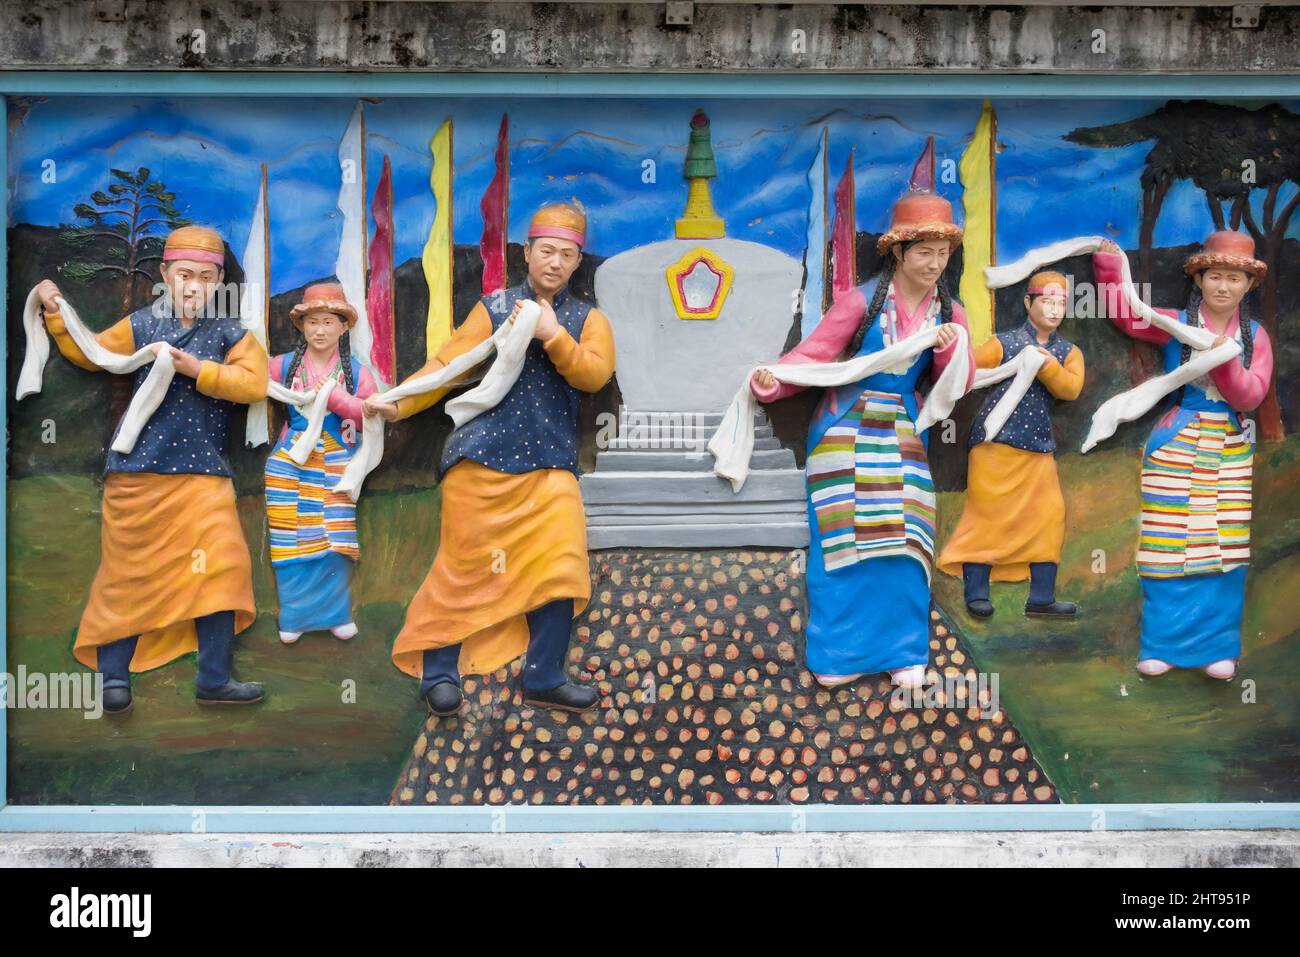 Pintura de relieve que muestra a la población étnica local, Gangtok, Sikkim, India Foto de stock